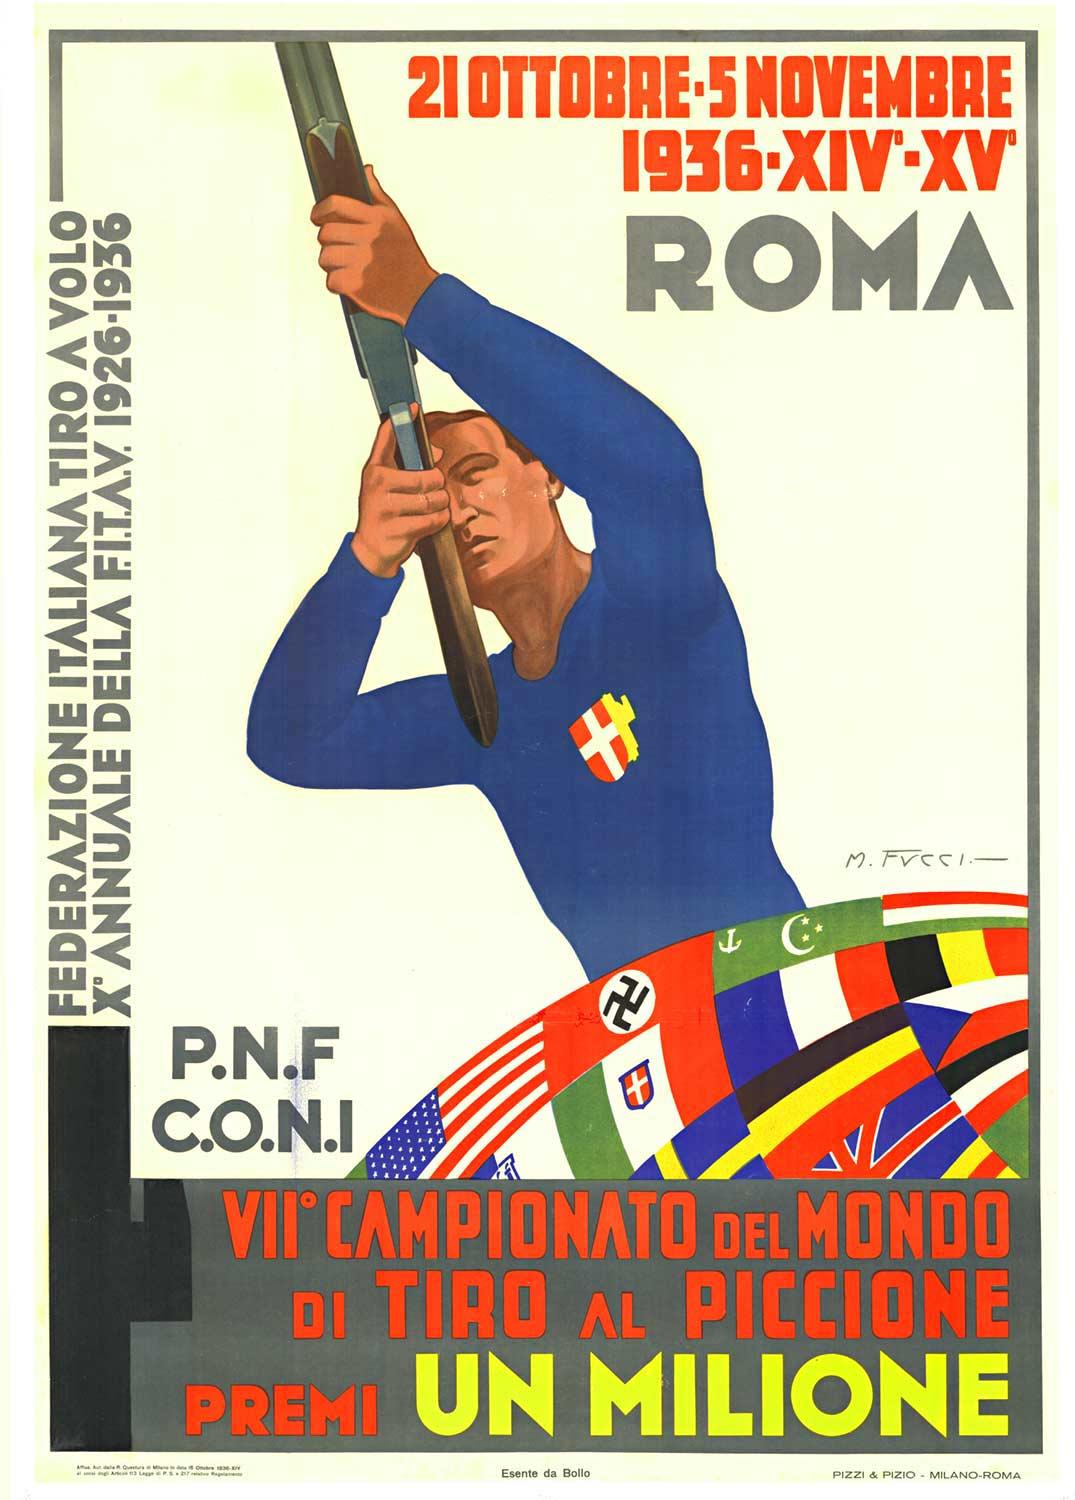 Affiche sportive vintage originale « Campionato del Mondo, Tiro al Piccione »